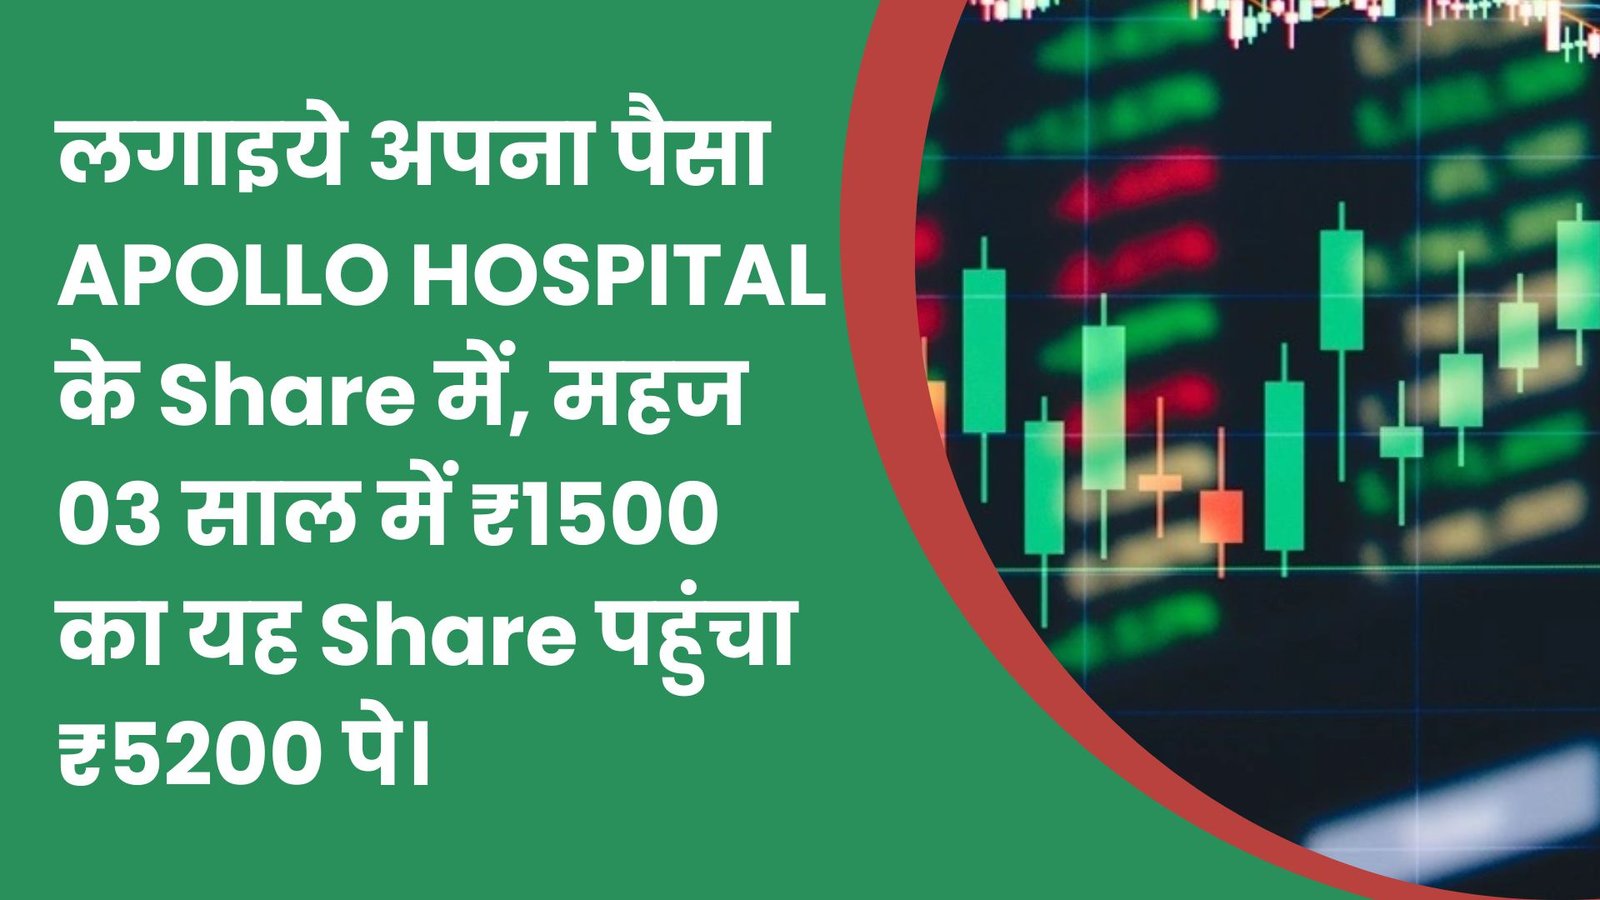 लगाइये अपना पैसा APOLLO HOSPITAL के Share में, महज 03 साल में ₹1500 का यह Share पहुंचा ₹5200 पे। 